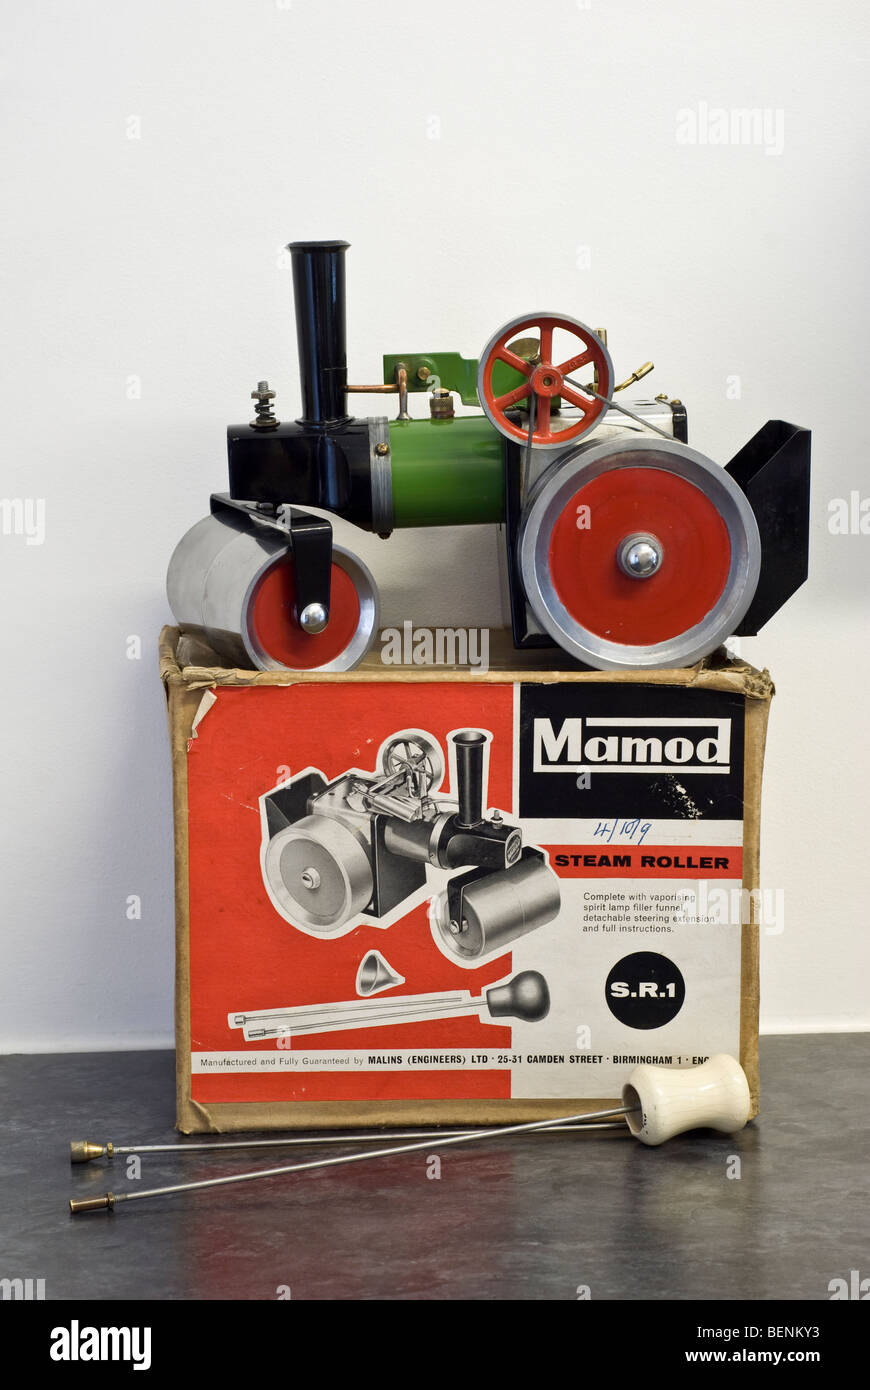 Mamod début modèle vintage vivre sr1 à vapeur avec boîte d'origine Banque D'Images